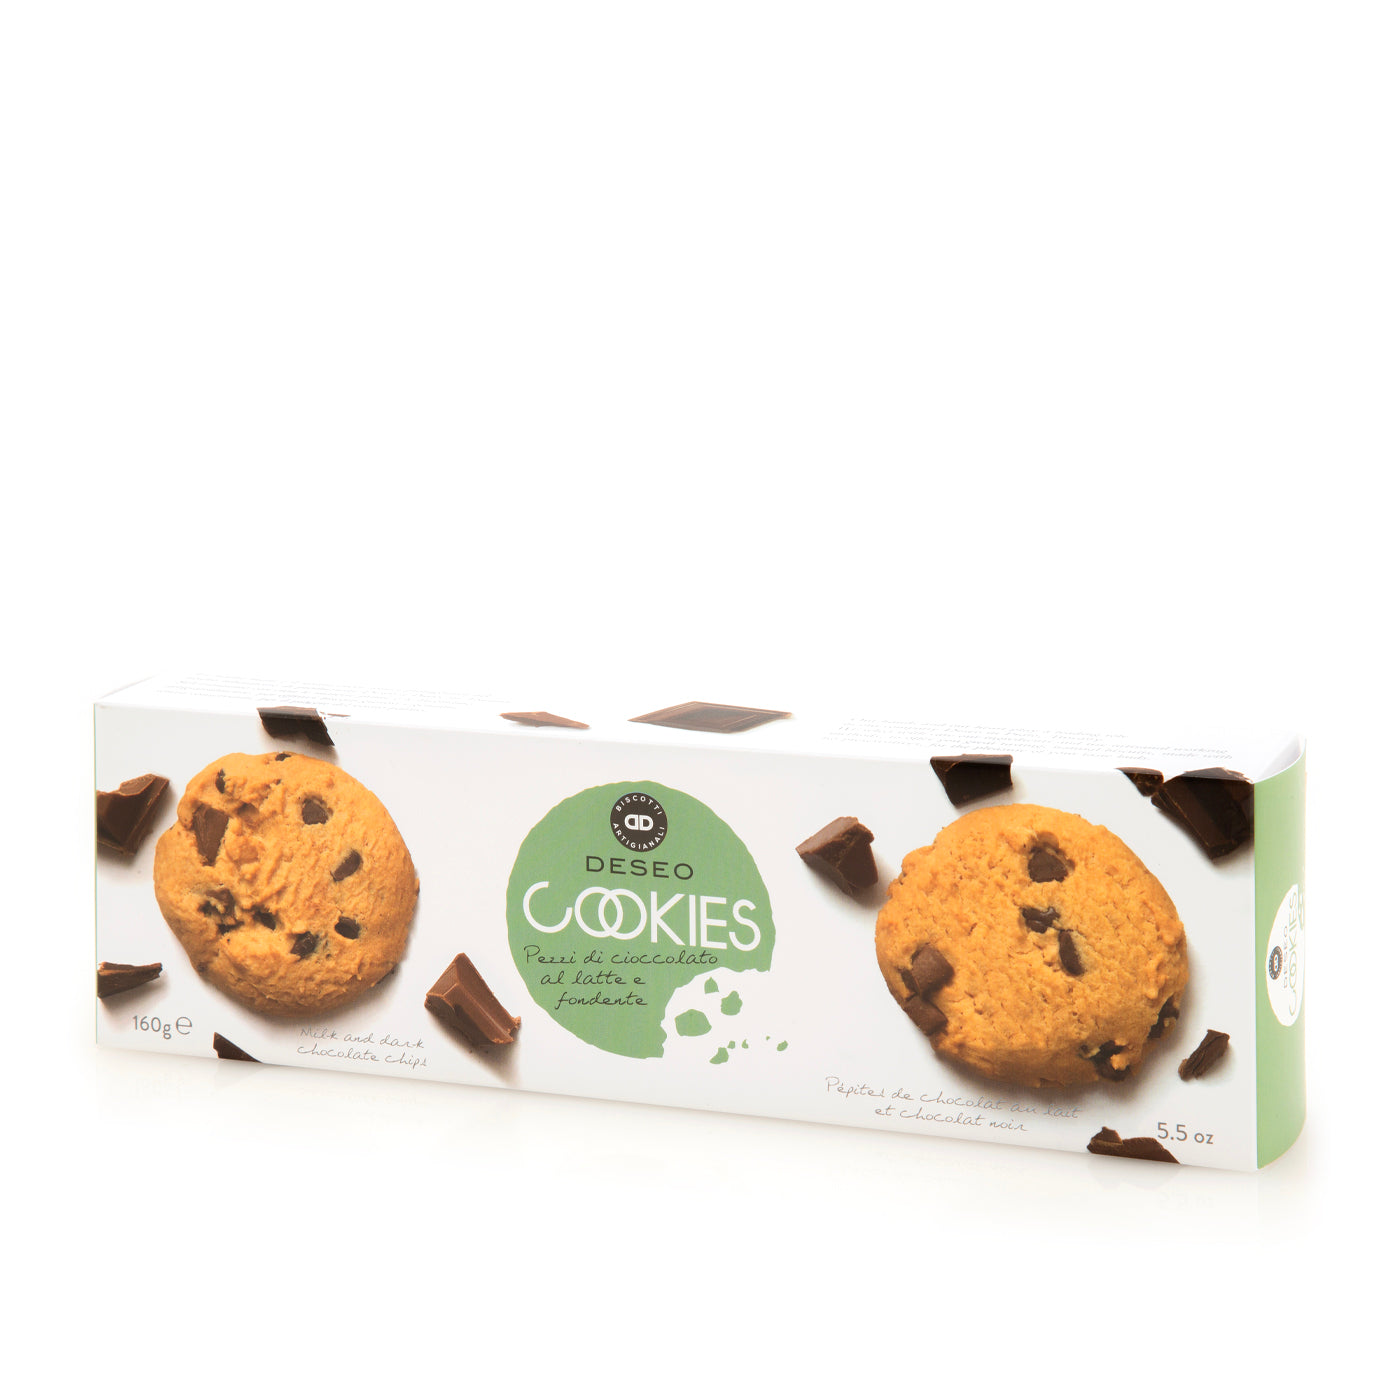 デセオ)クッキー チョコチップ 160G – EATALY